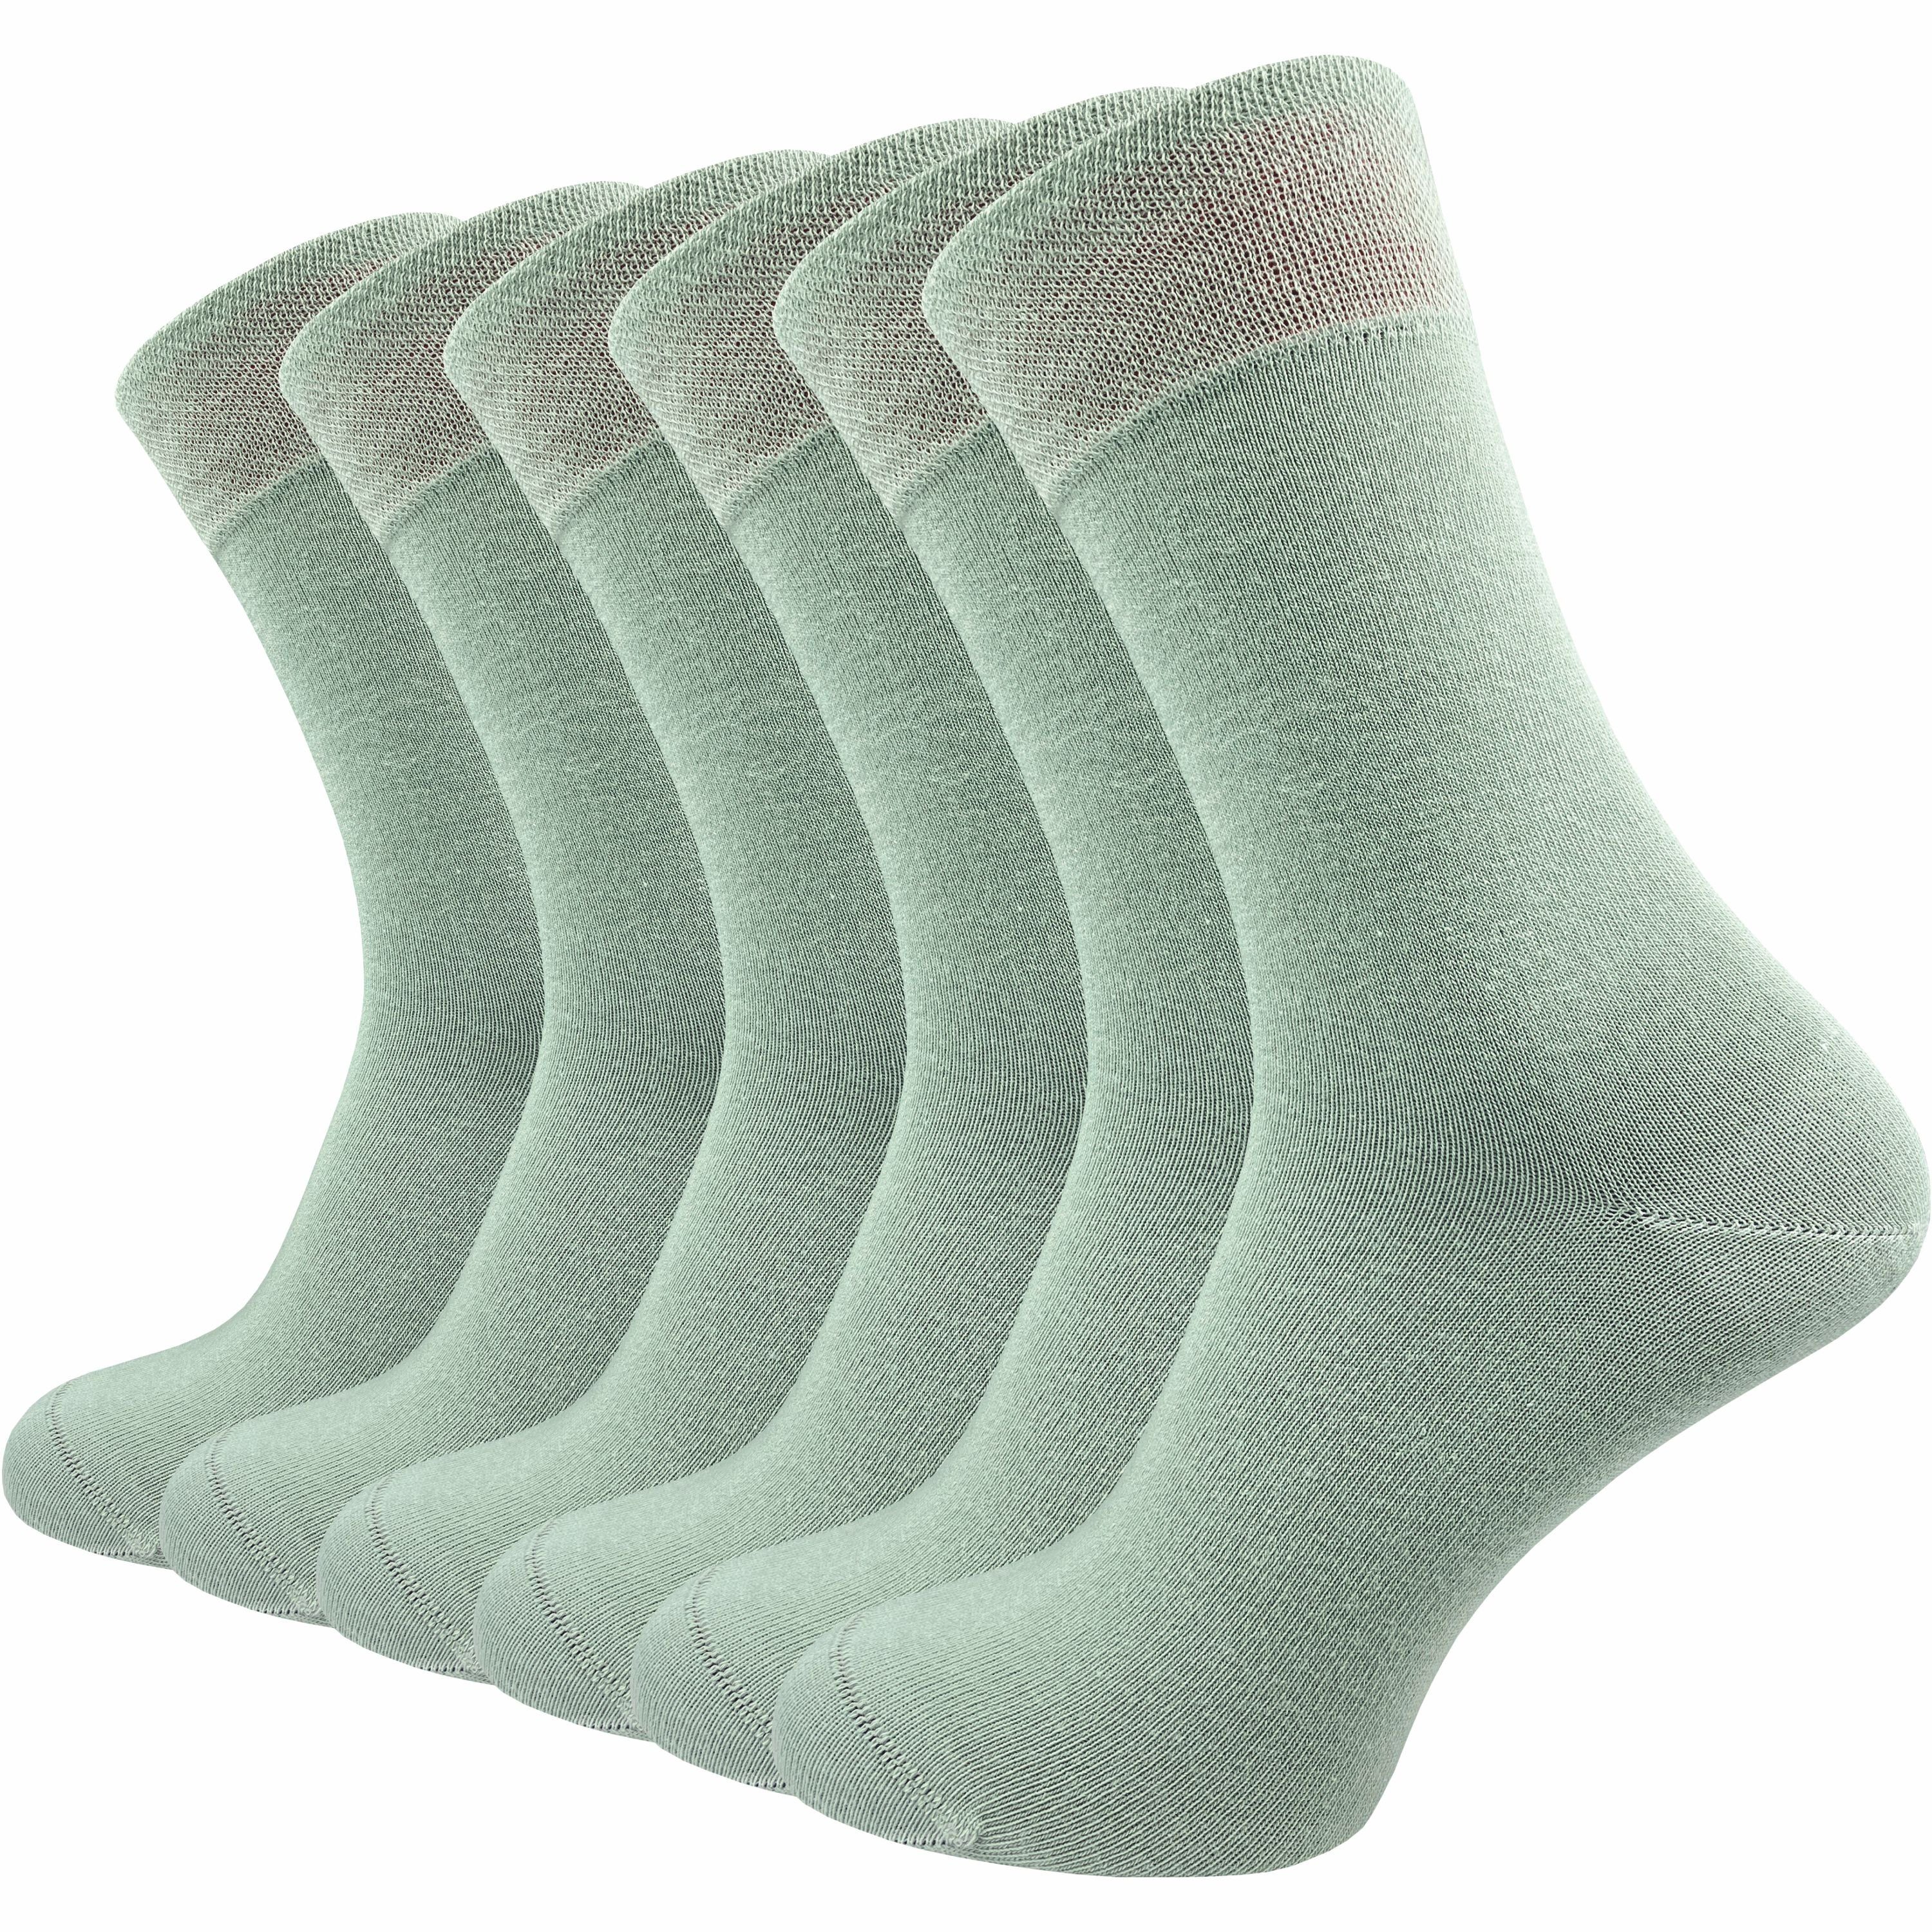 GAWILO Socken für Damen & Herren - Premium Komfortbund ohne drückende Naht (6 Paar) schwarz, grau & blau - aus hochwertiger, doppelt gekämmter Baumwolle salbei